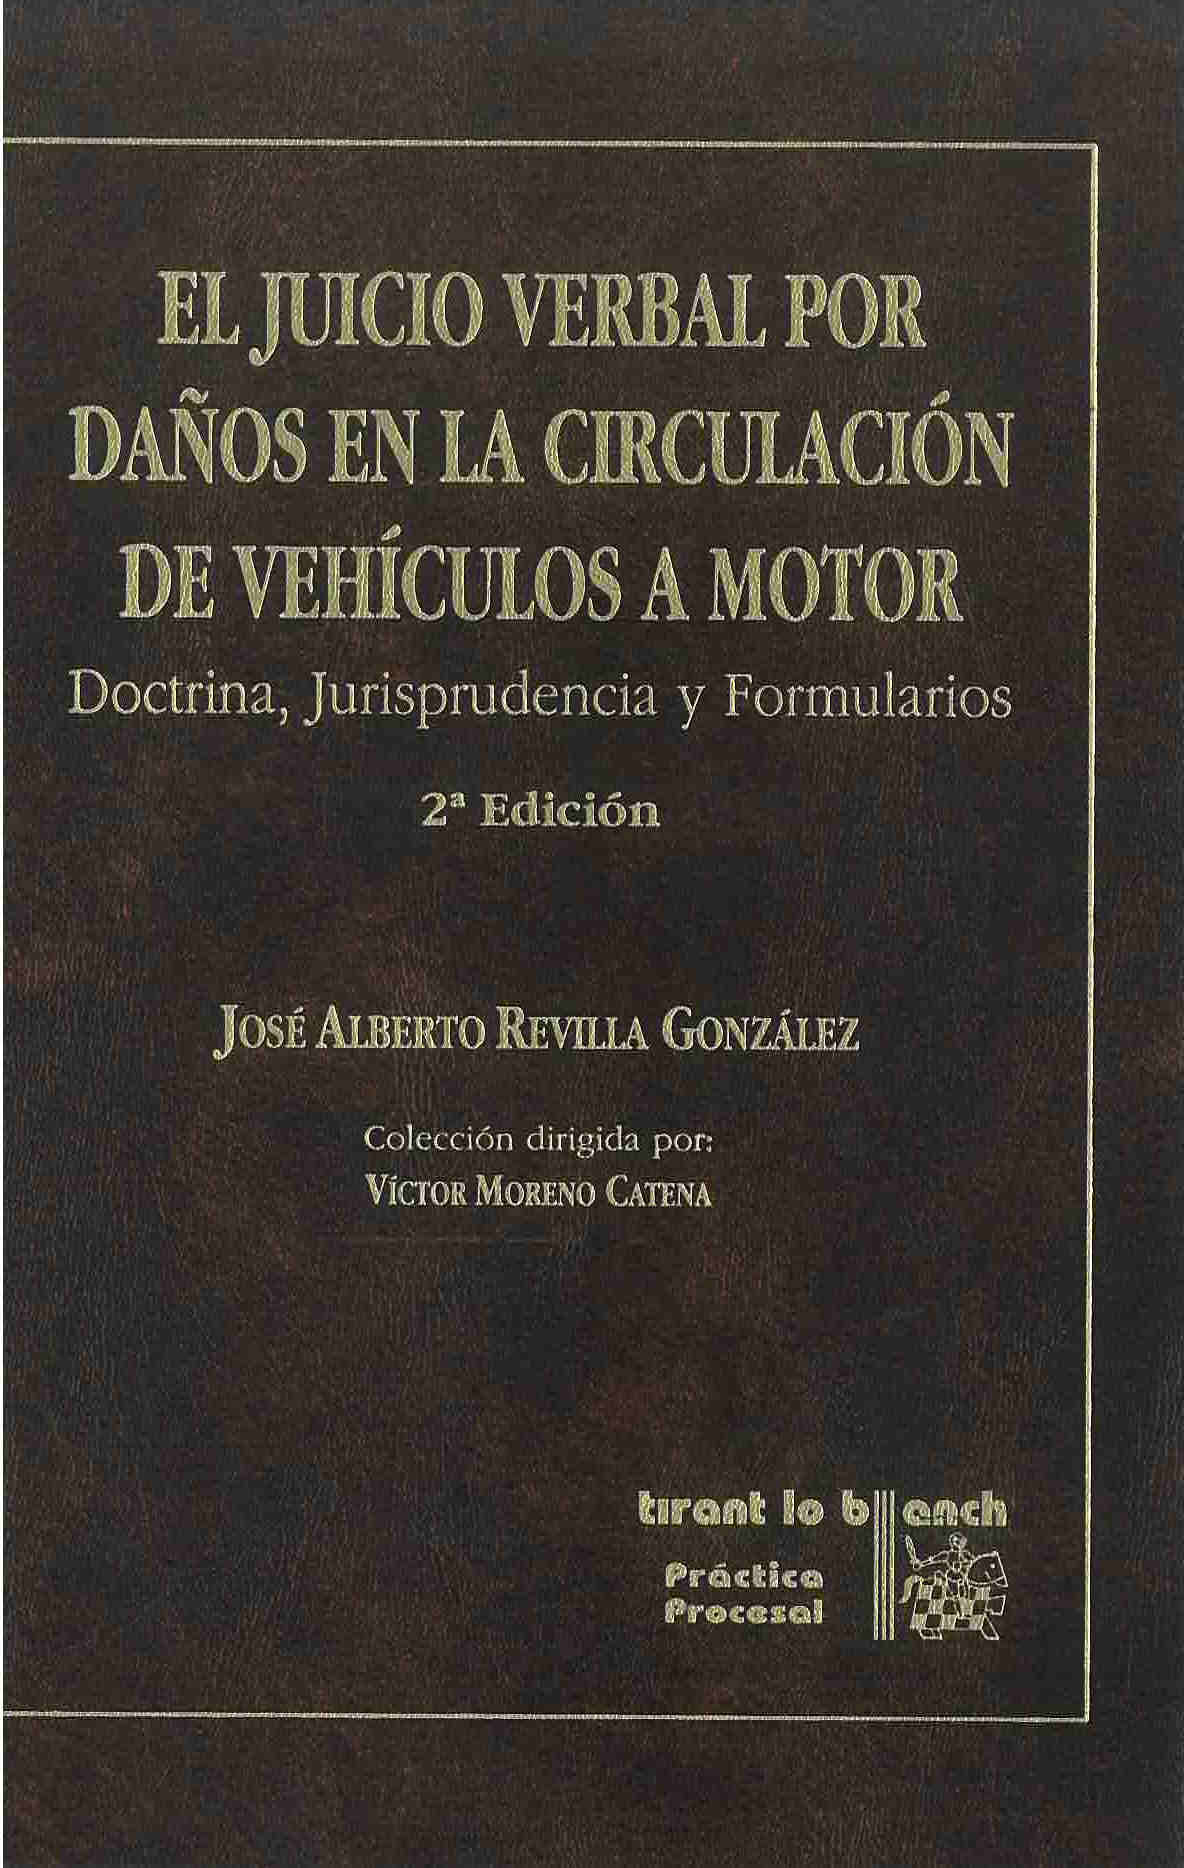 El juicio verbal por daños en la circulación de vehículos a motor. Doctrina, Jurisprudencia y formularios